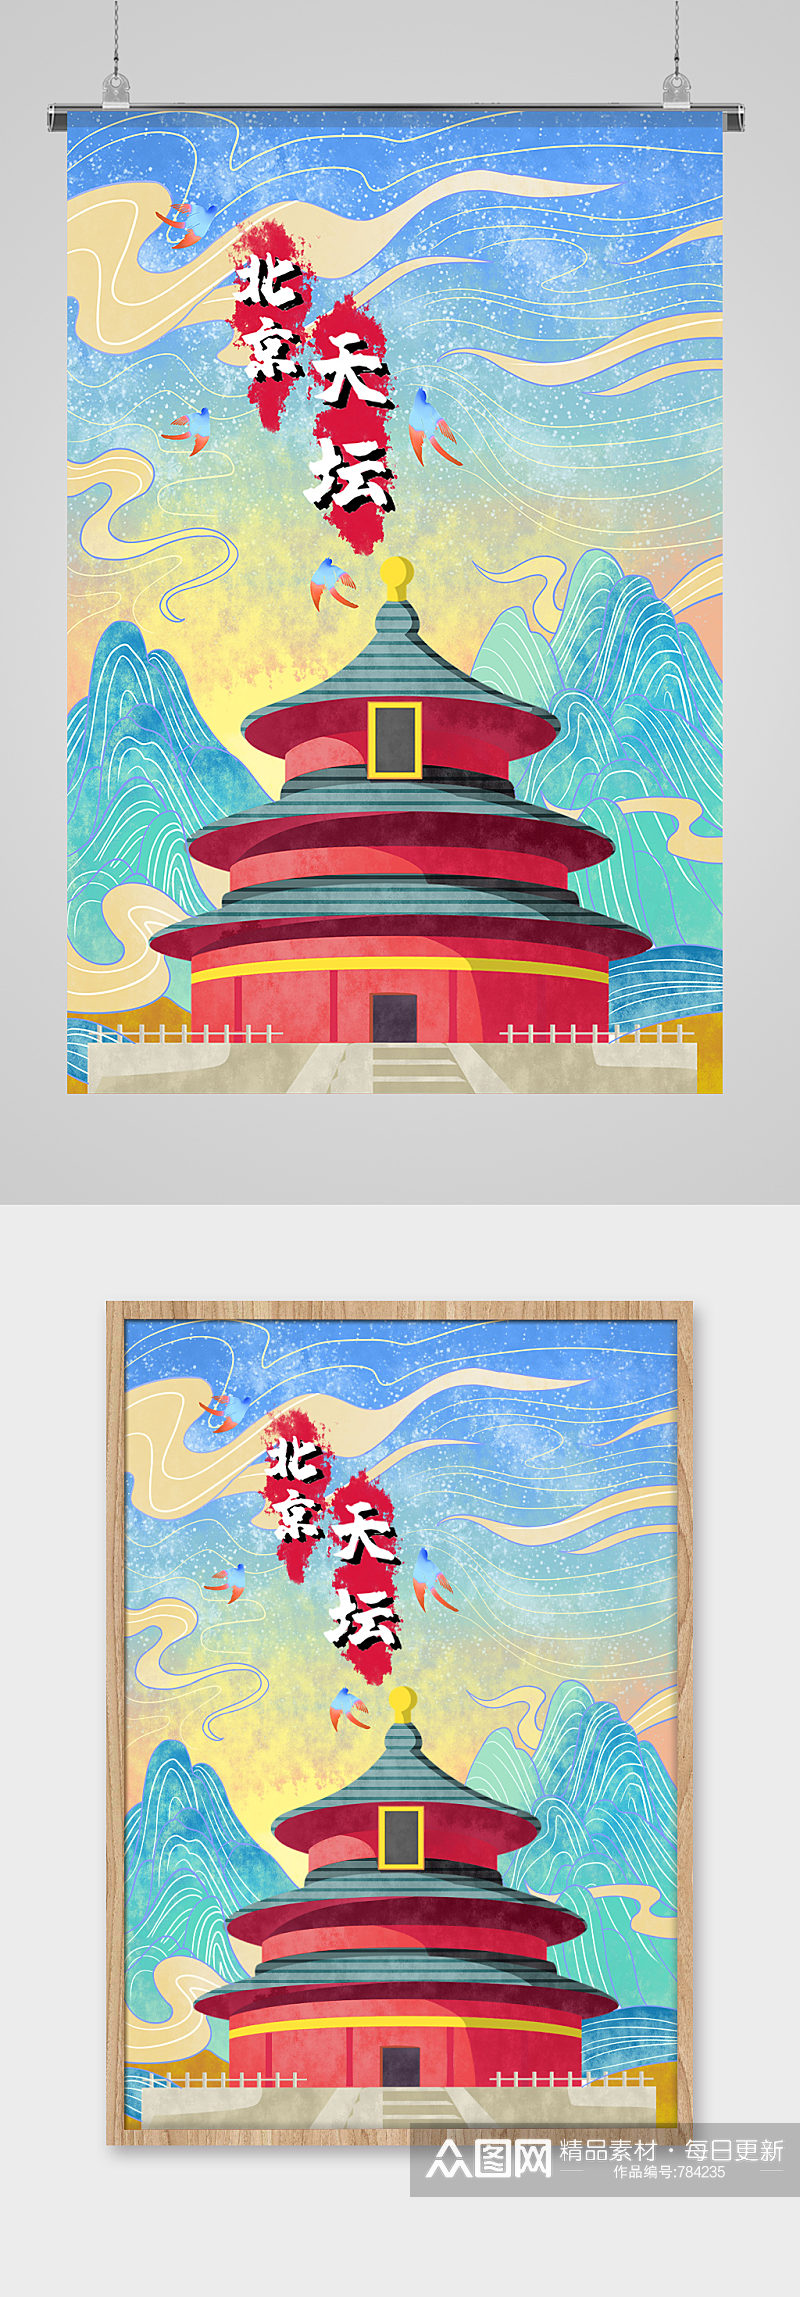 北京天坛旅游建筑风景国潮城市建筑插画素材